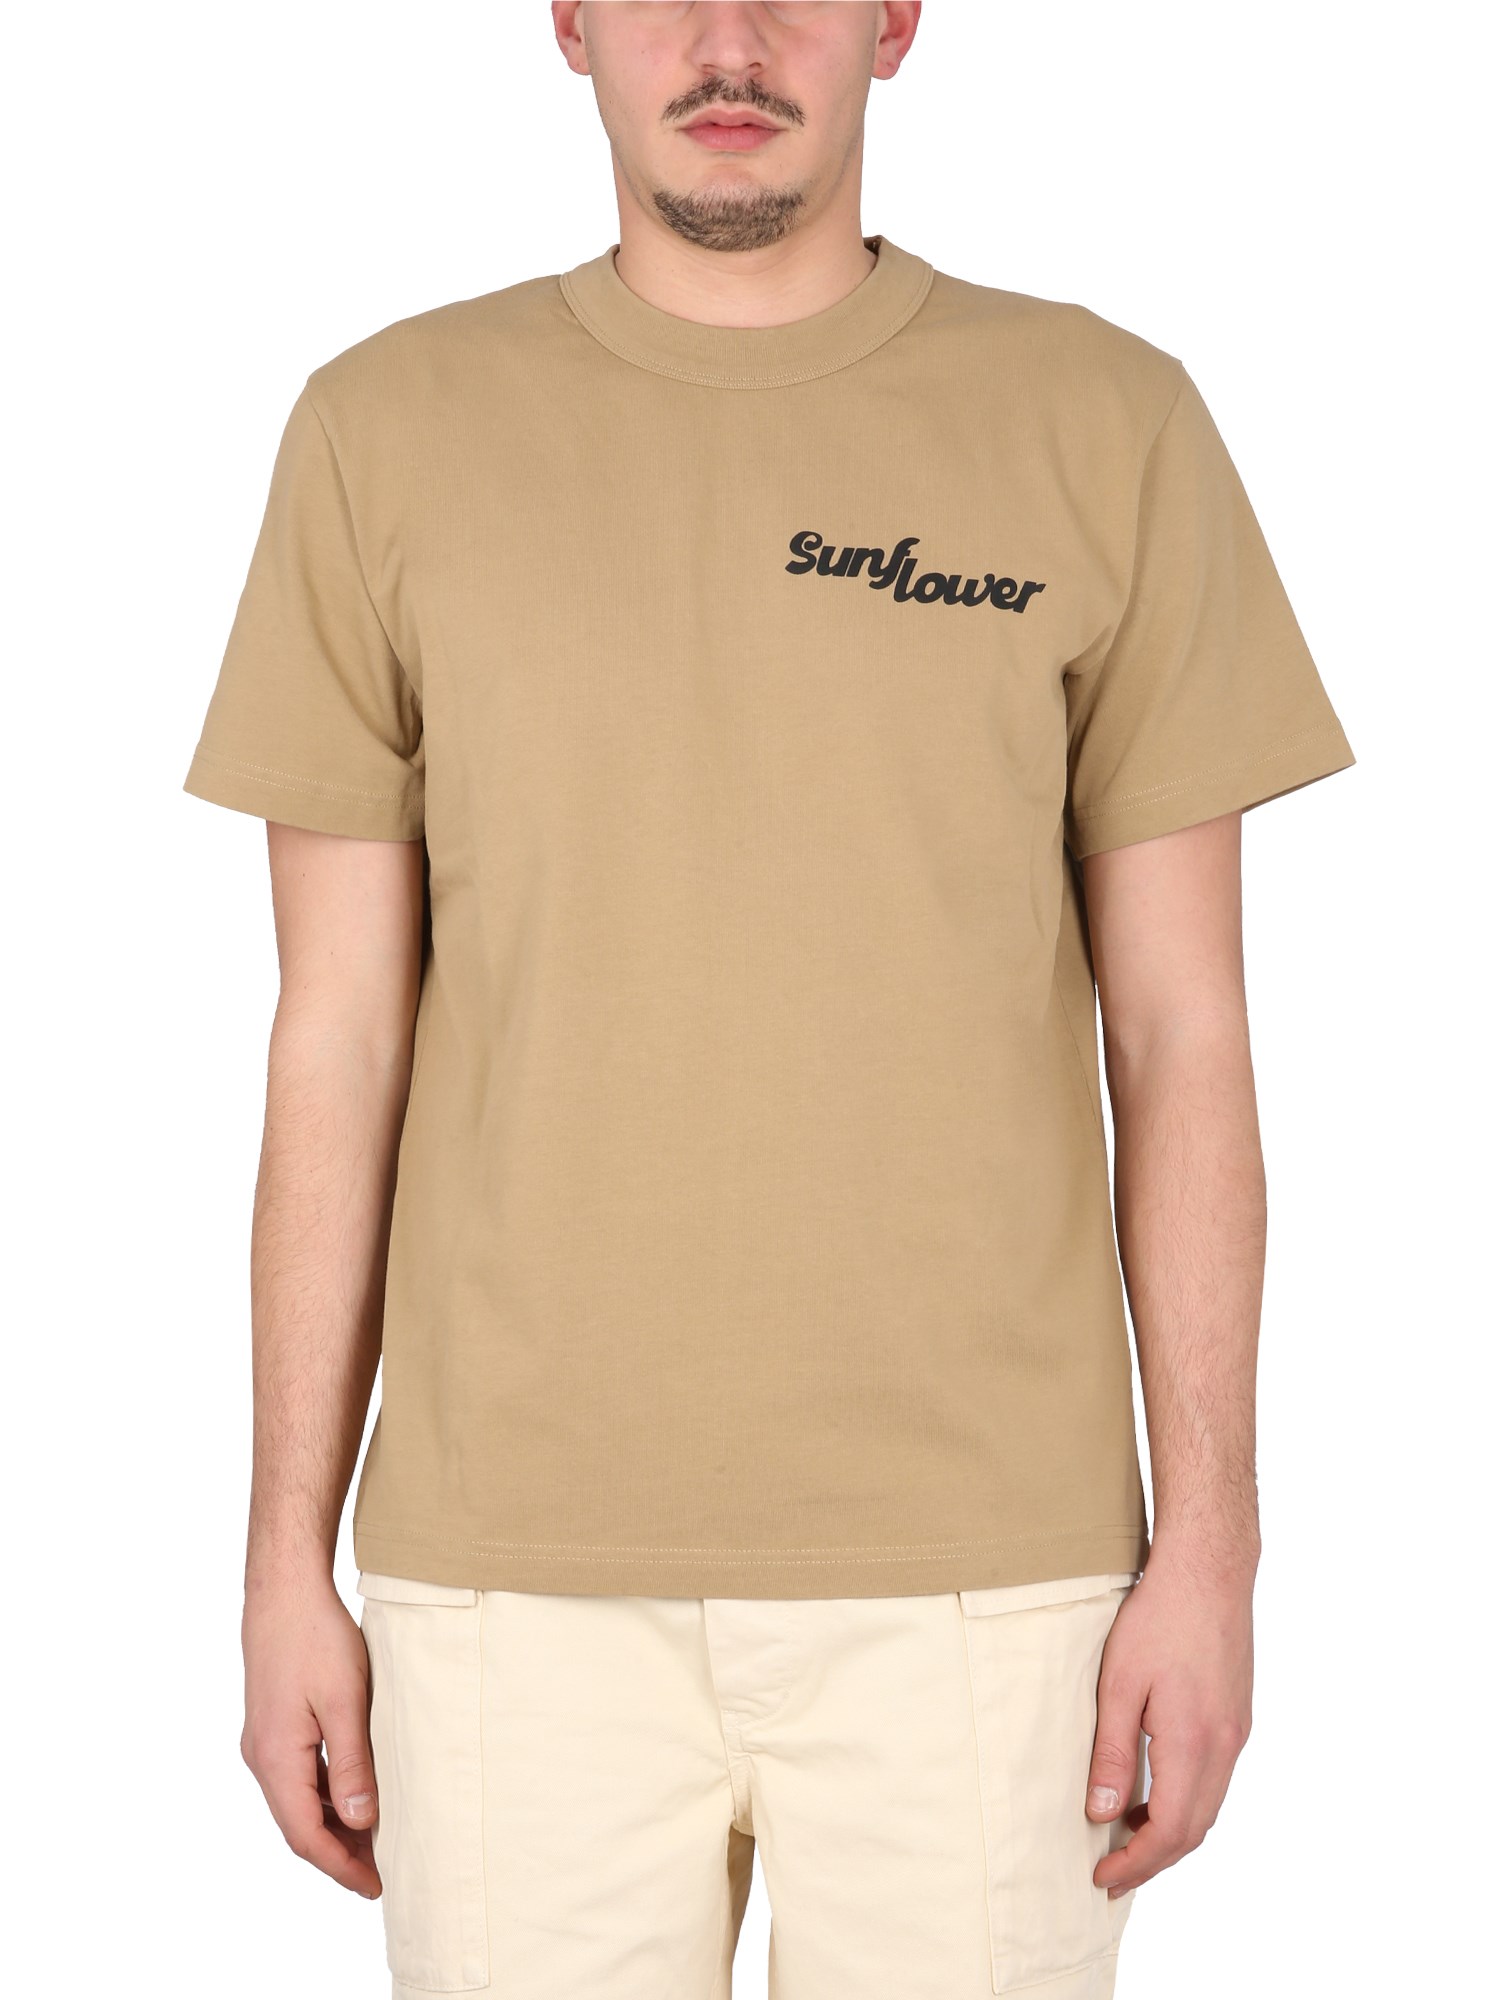 Sunflower sunflower t-shirt with logo